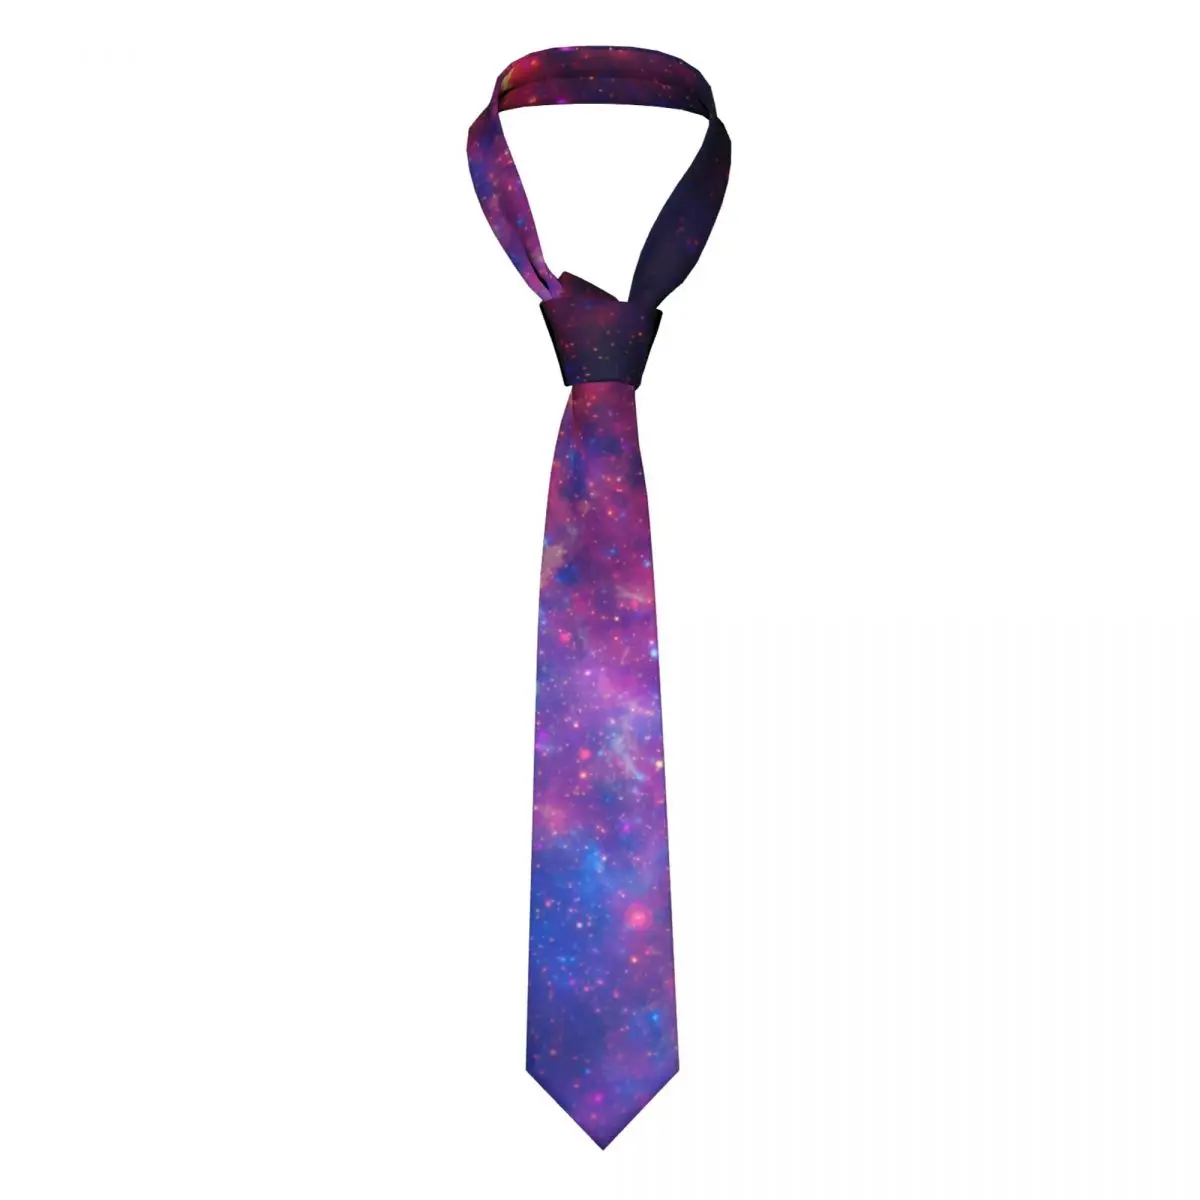 

Галстук с принтом галактики красочный молочный путь полиэстер шелк узор шейный галстук подарок офисная Мужская рубашка галстук